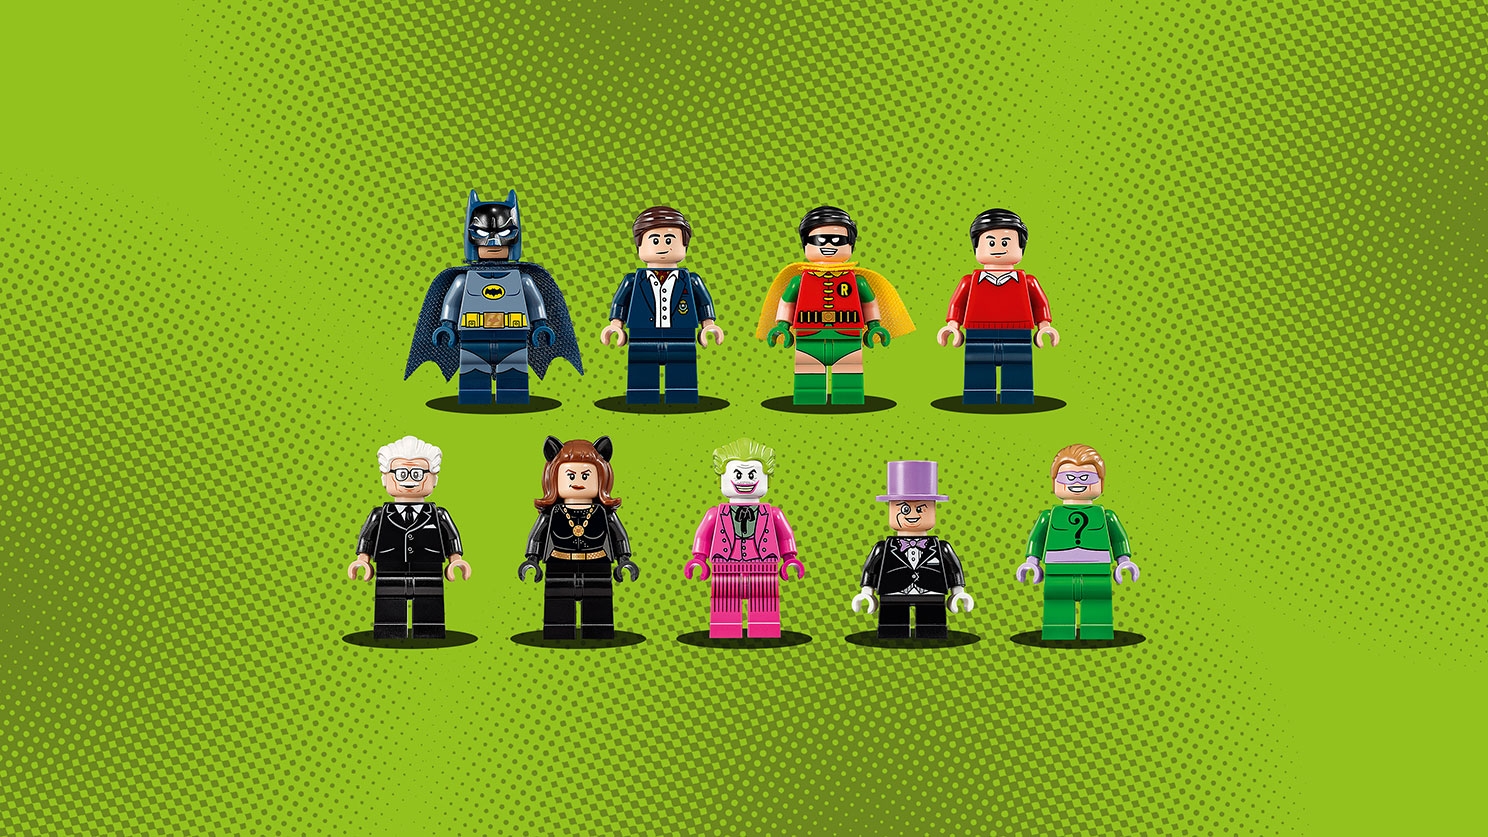  LEGO Super Heroes Batman Classic TV Series â€“ Batcave 76052 :  Toys & Games